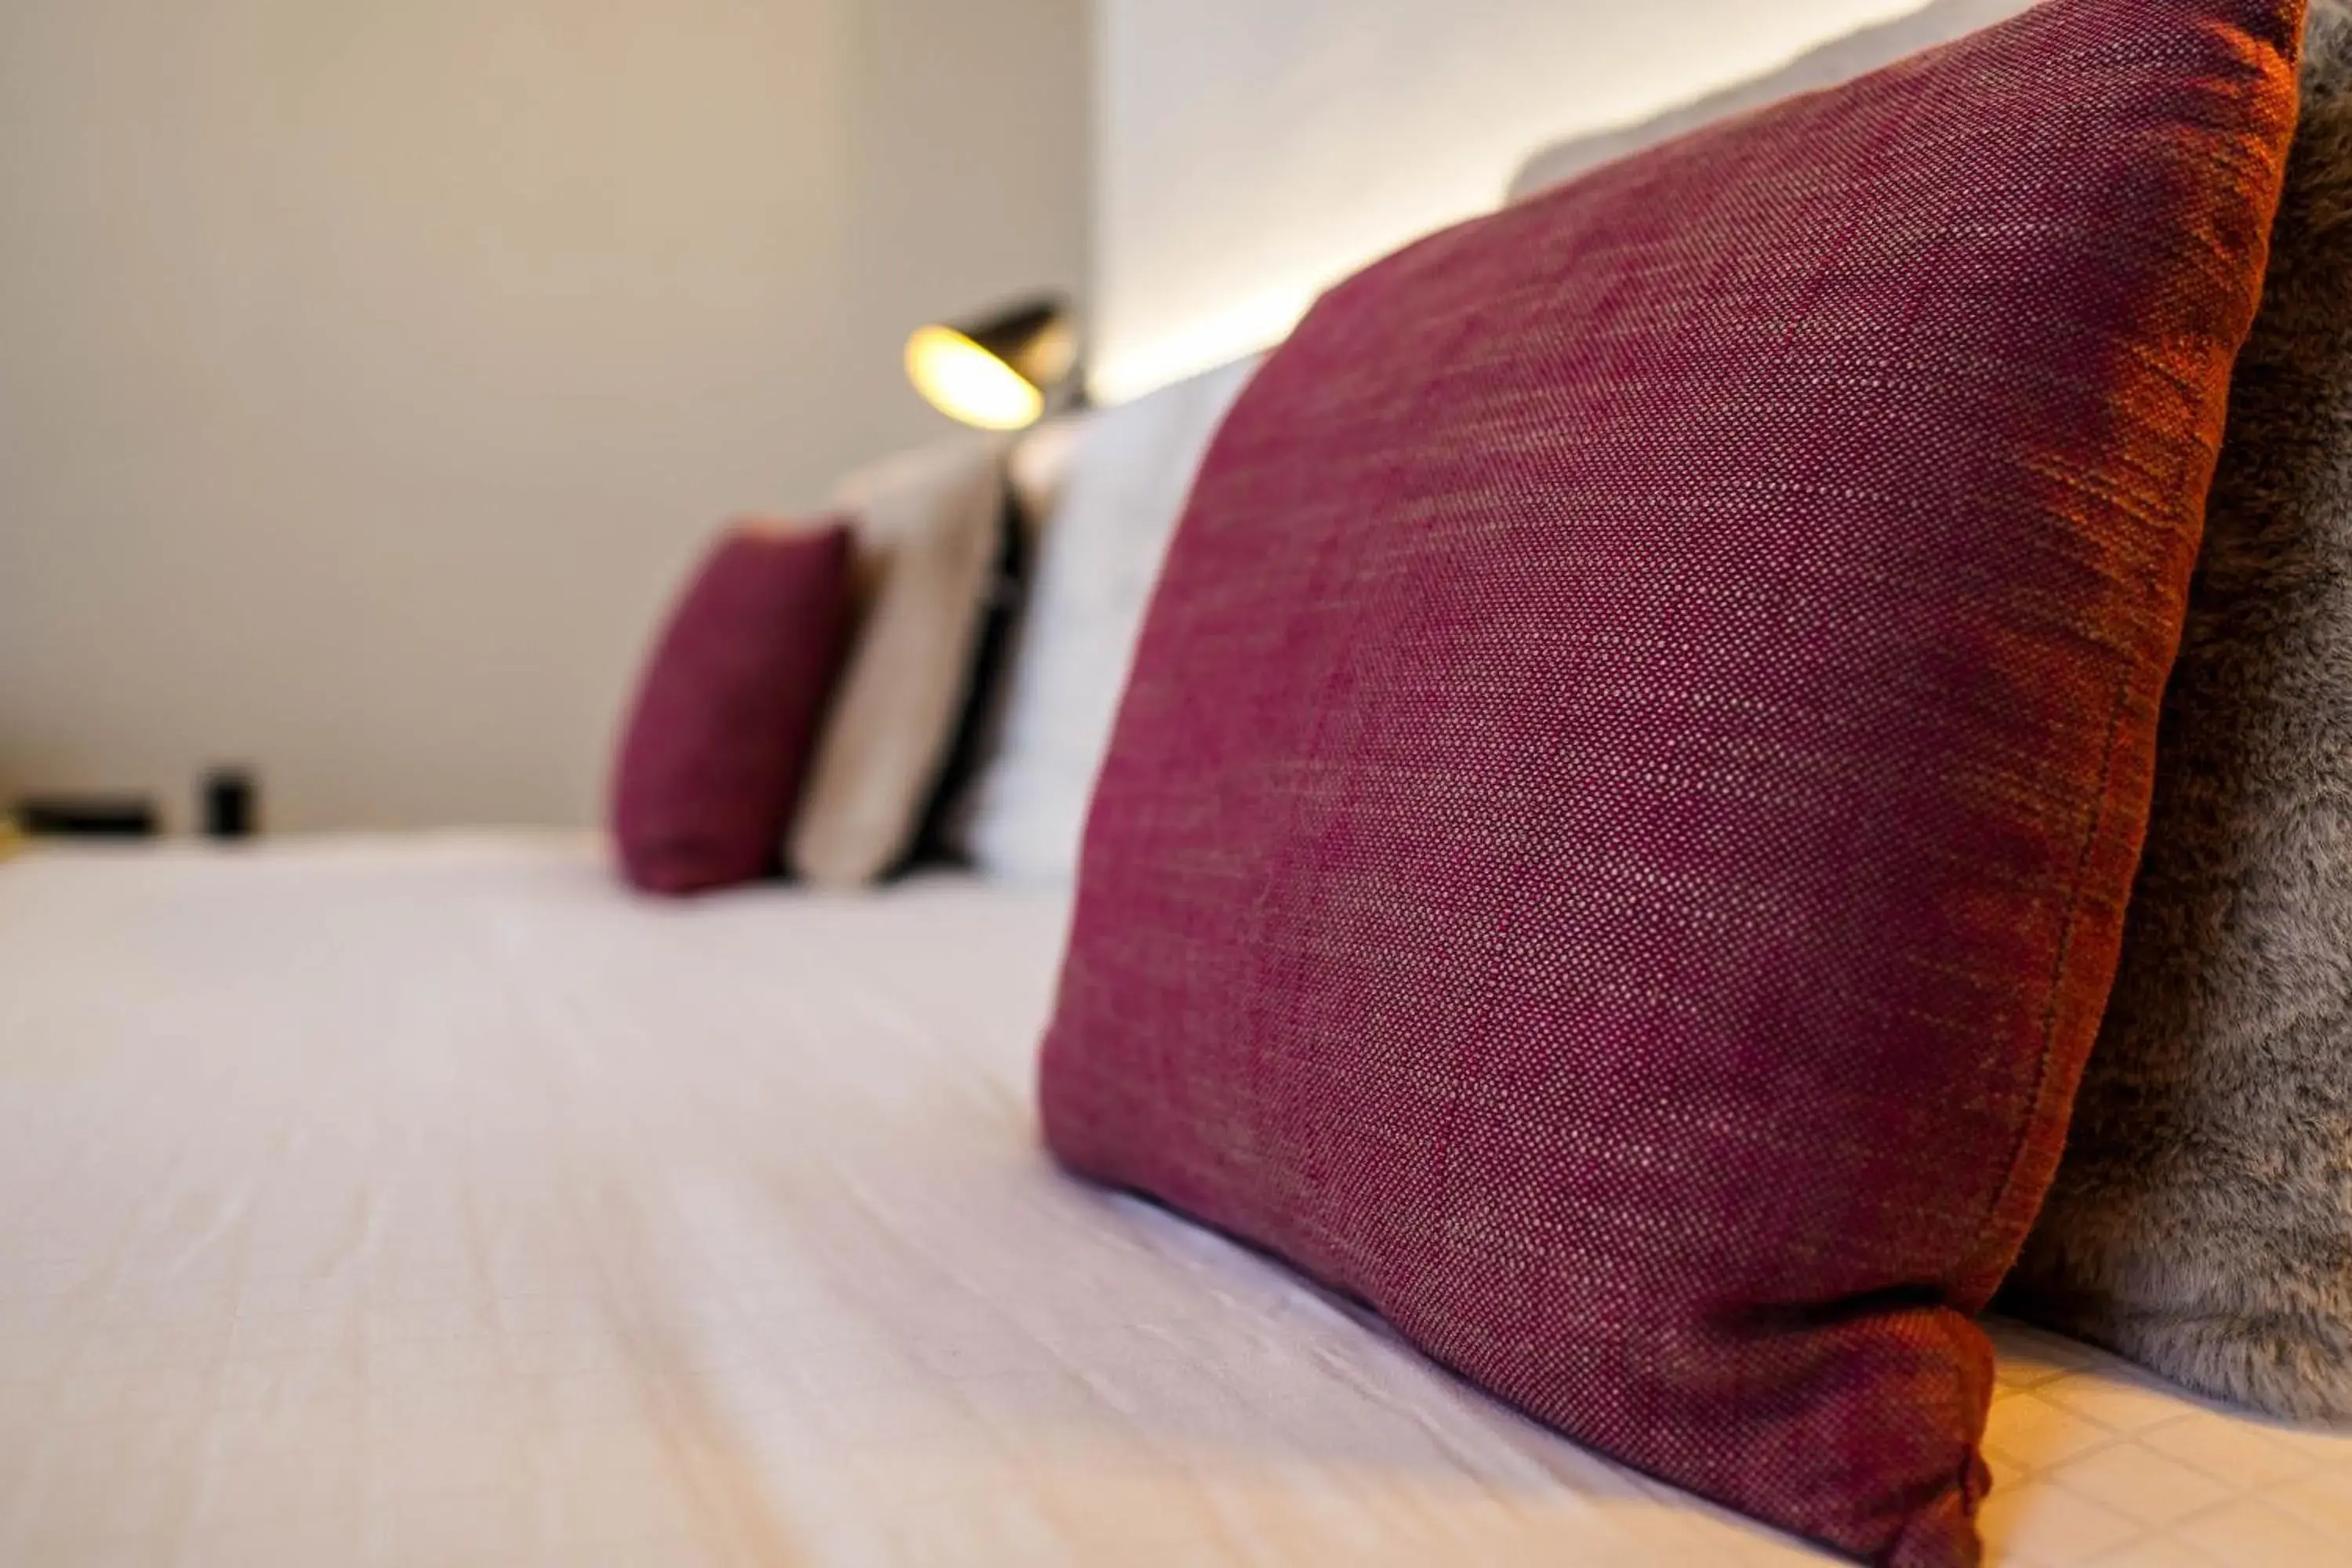 Bed in Hotel Gravensteen